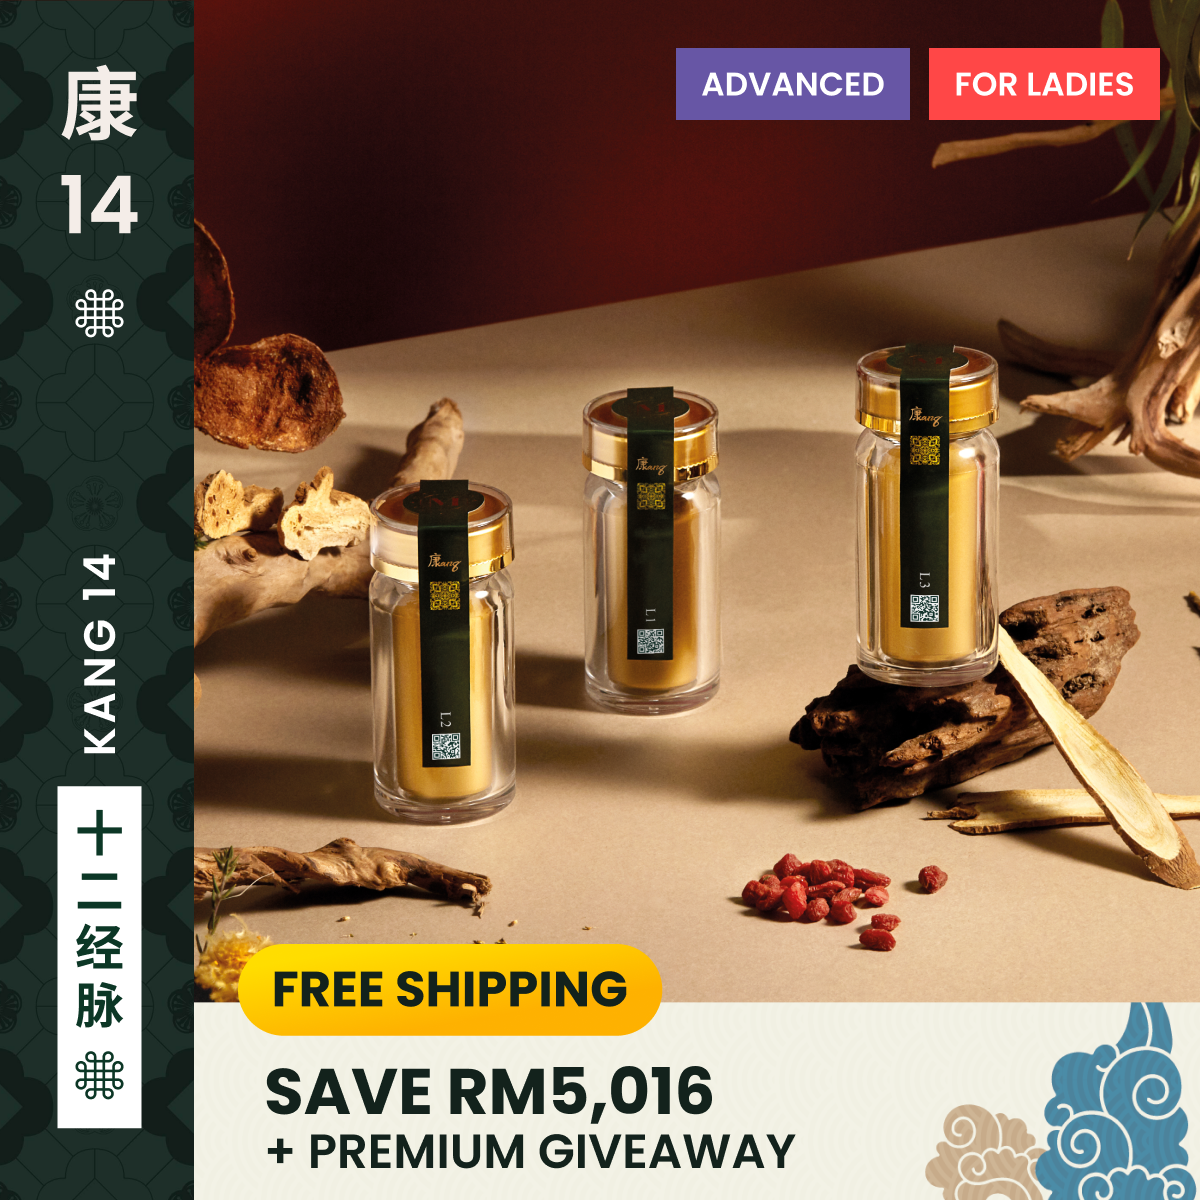 Kang 14 Series Advanced For Ladies 康14系列至尊女性调理 - 24 Bottles